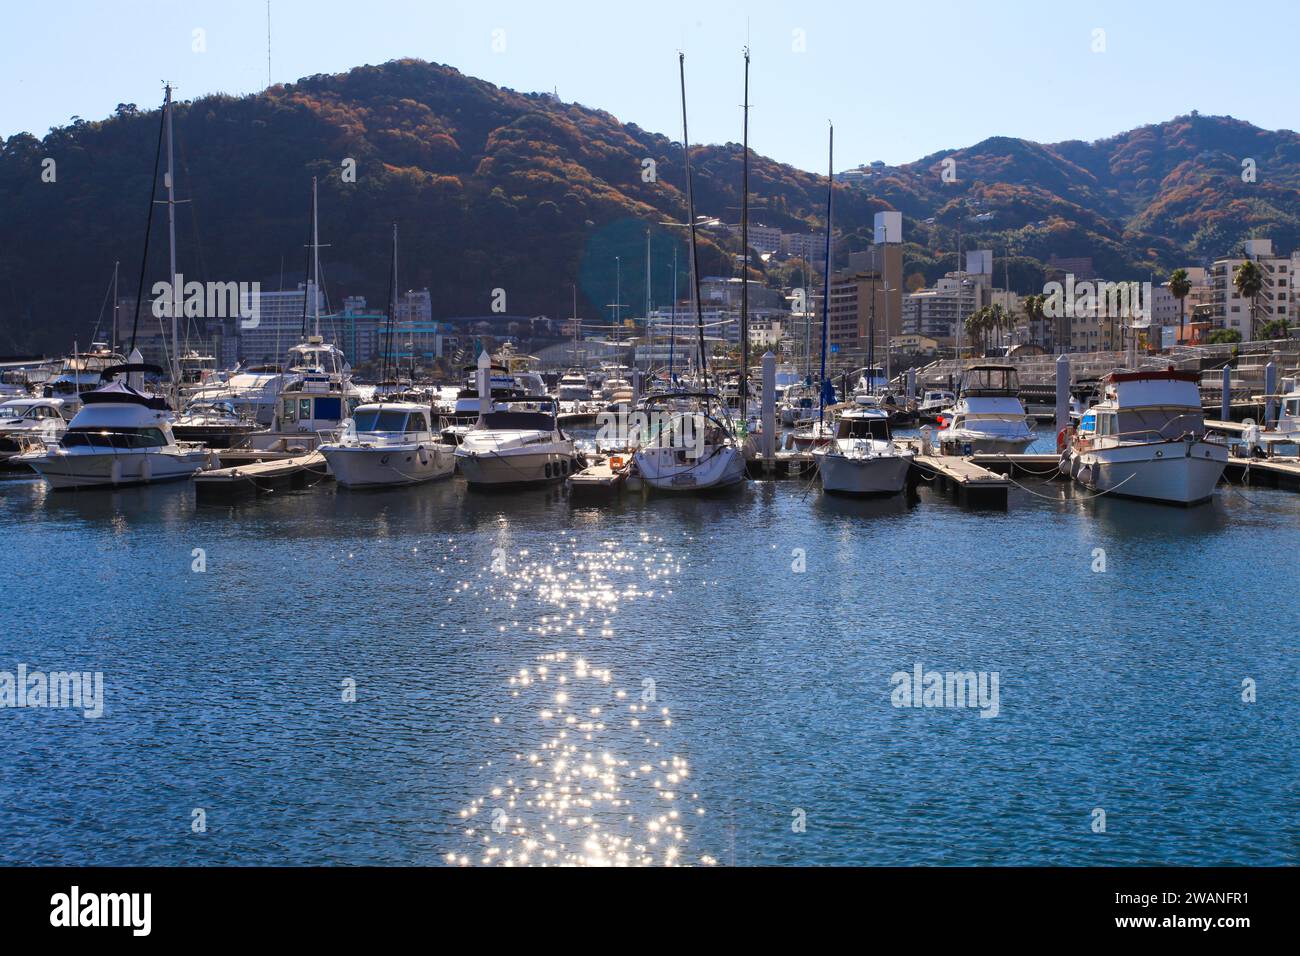 Atami Marina nella città di Atami sulla penisola di Izu nella prefettura di Shizuoka, Giappone. Foto Stock